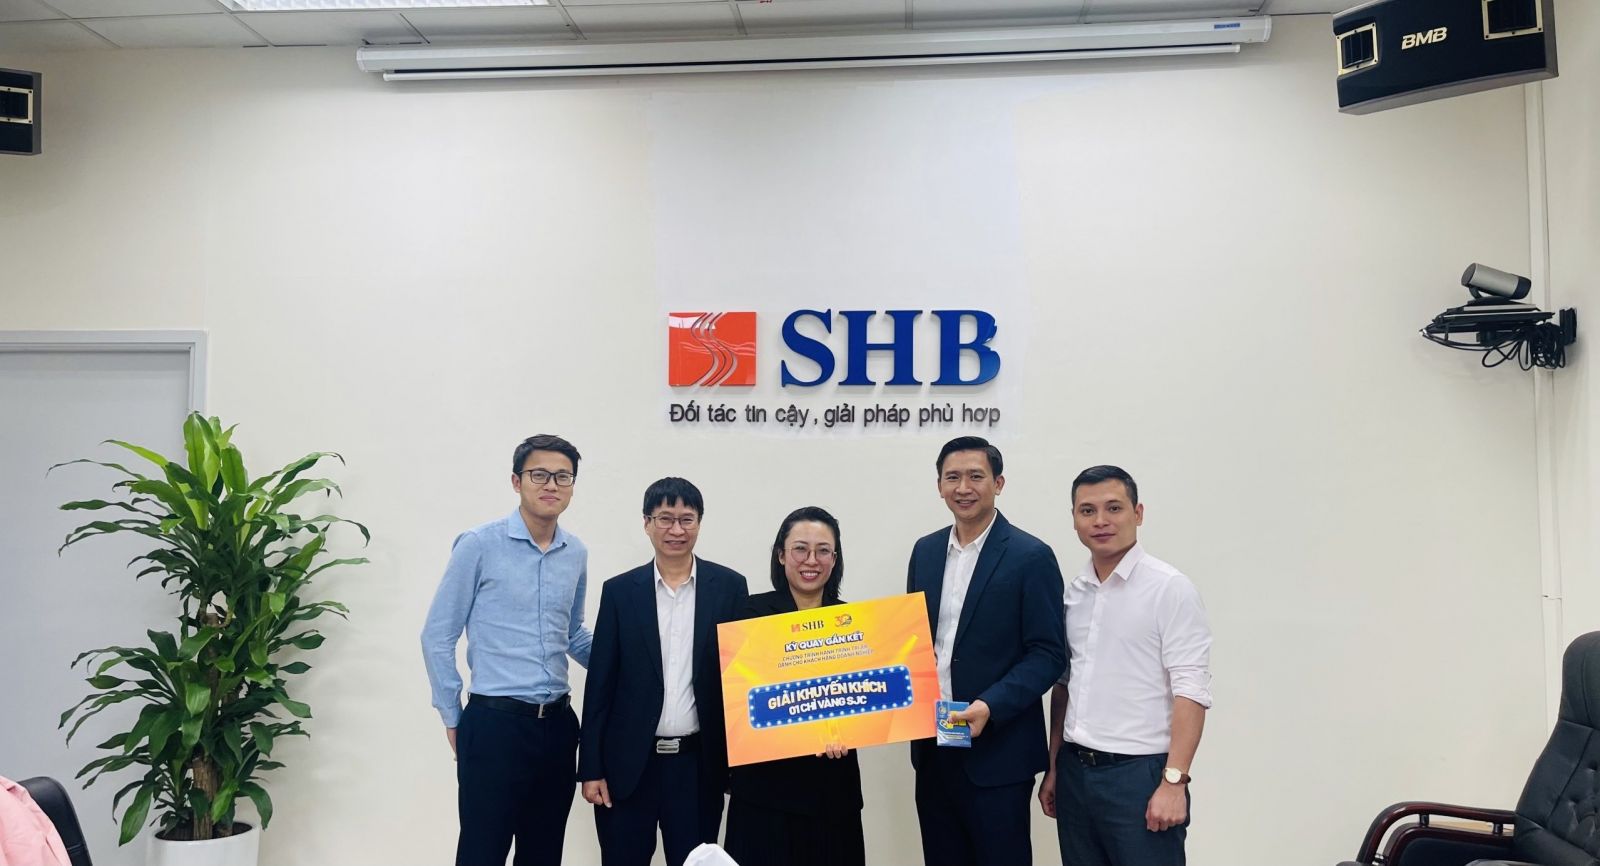 Đại diện SHB CN Đông Đô trao giải Khuyến Khích kỳ quay Gắn Kết trị giá 01 chỉ vàng SJC 999.9 cho khách hàng